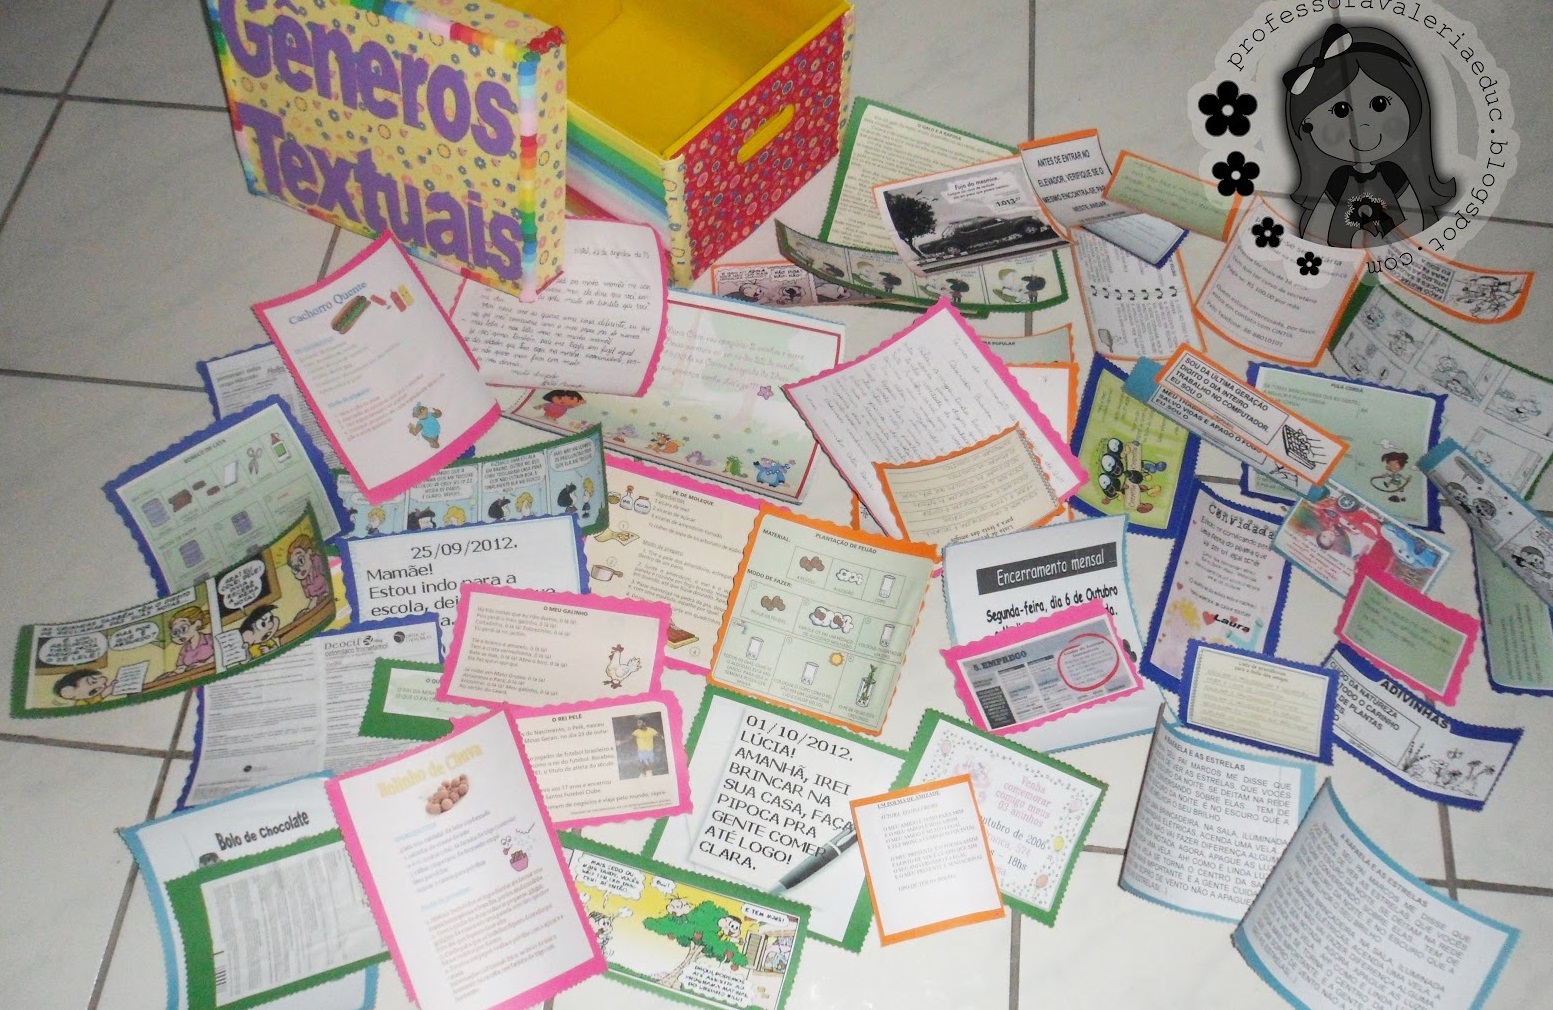 Caixa de Gêneros Textuais para facilitar a aprendizagem de forma lúdica